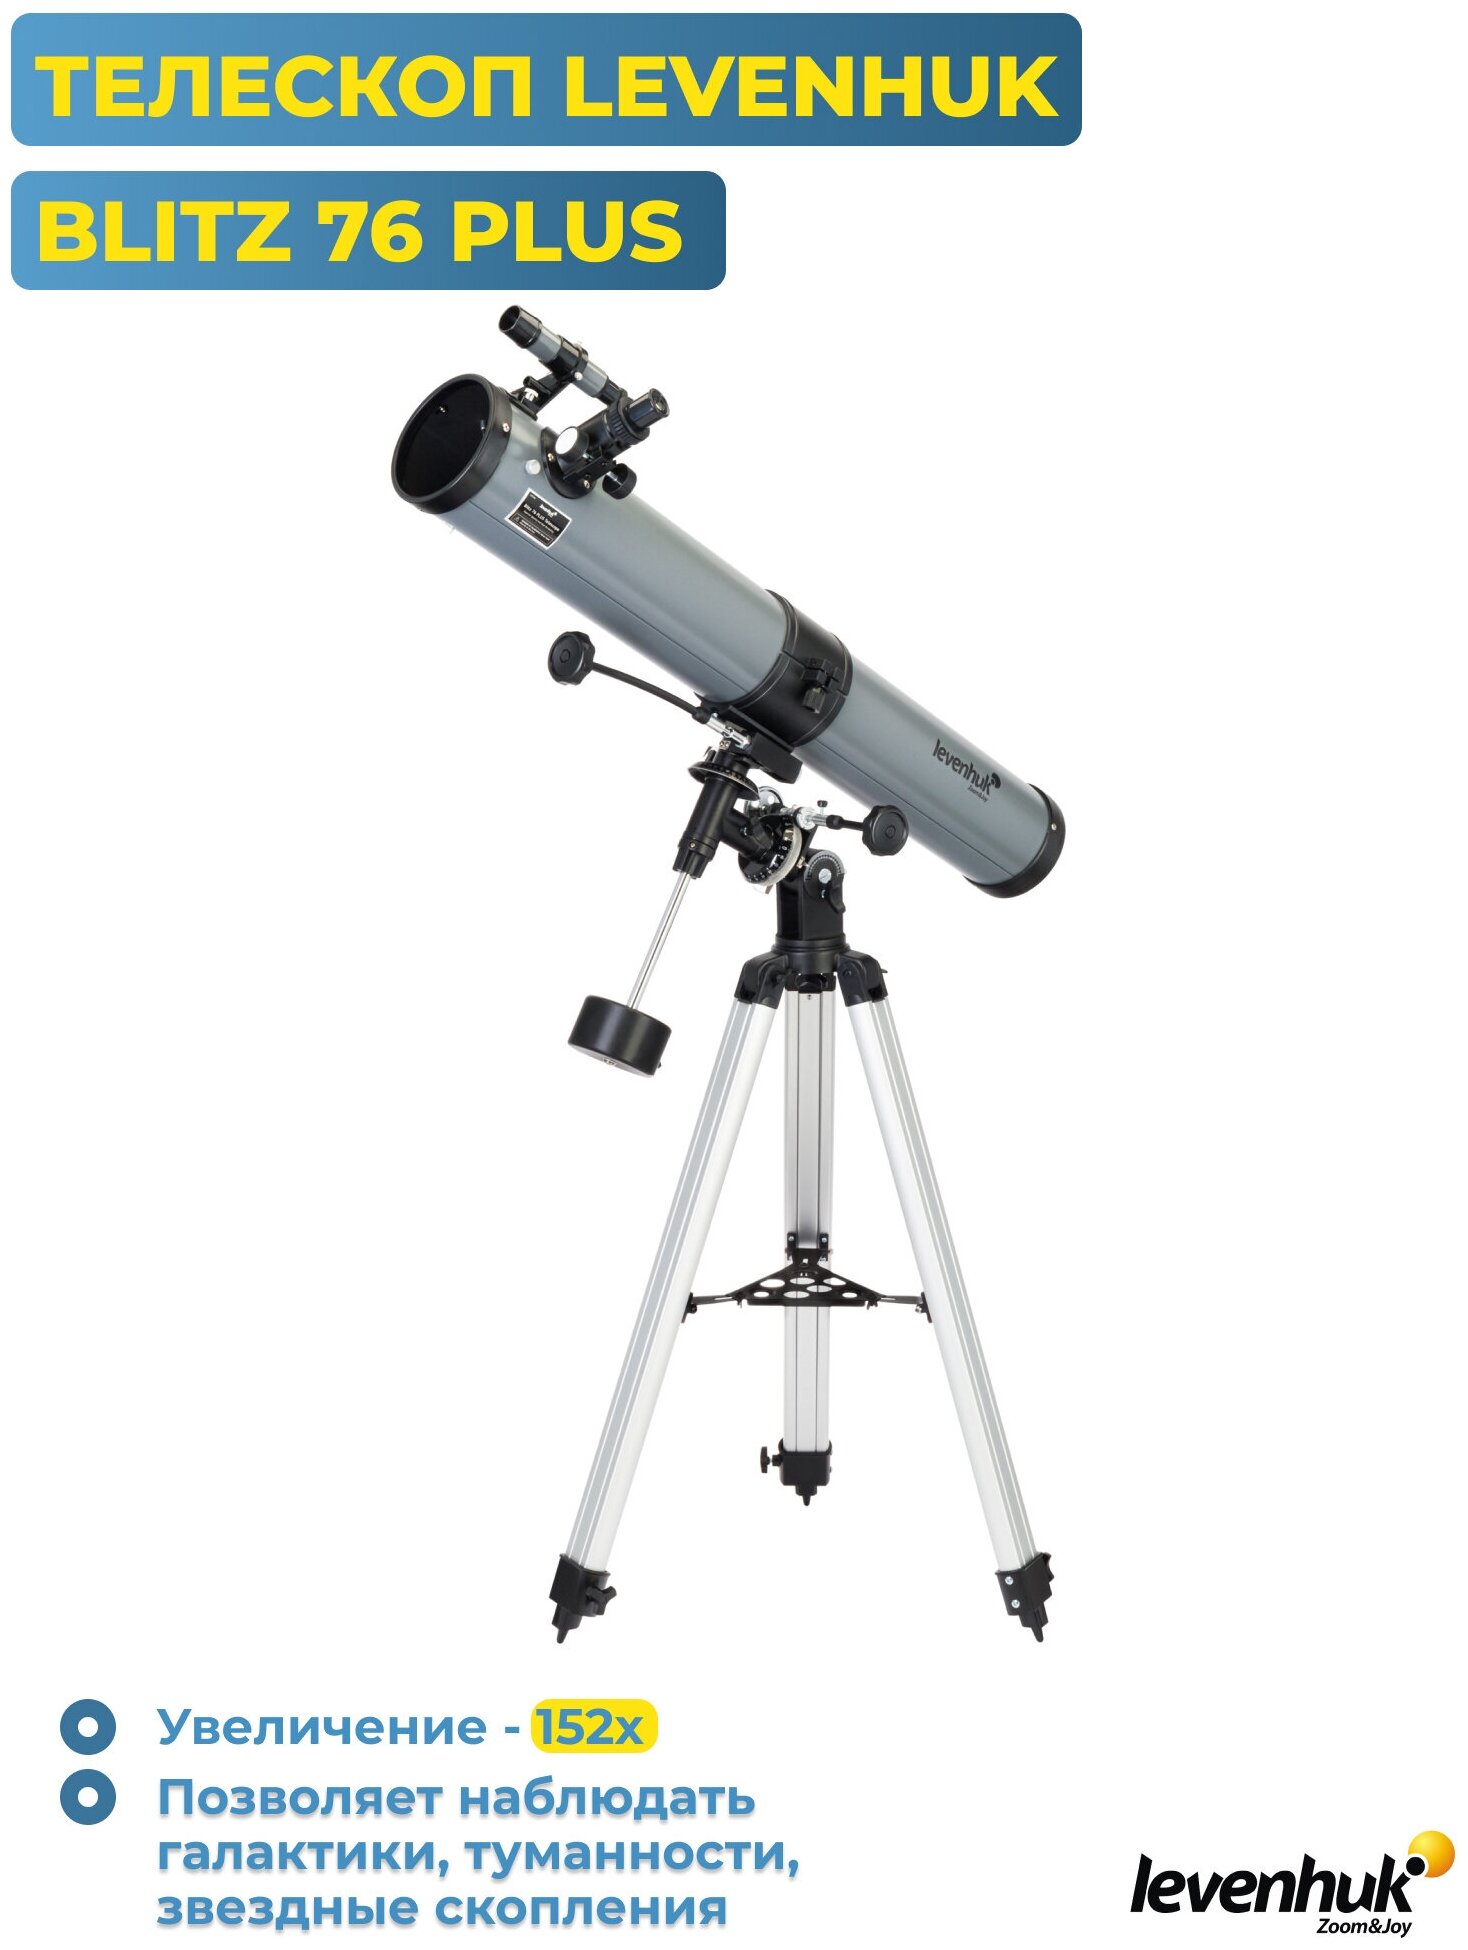 Телескоп Levenhuk Blitz 76 Plus рефлектор d76 fl900мм 152x серый/черный - фото №7